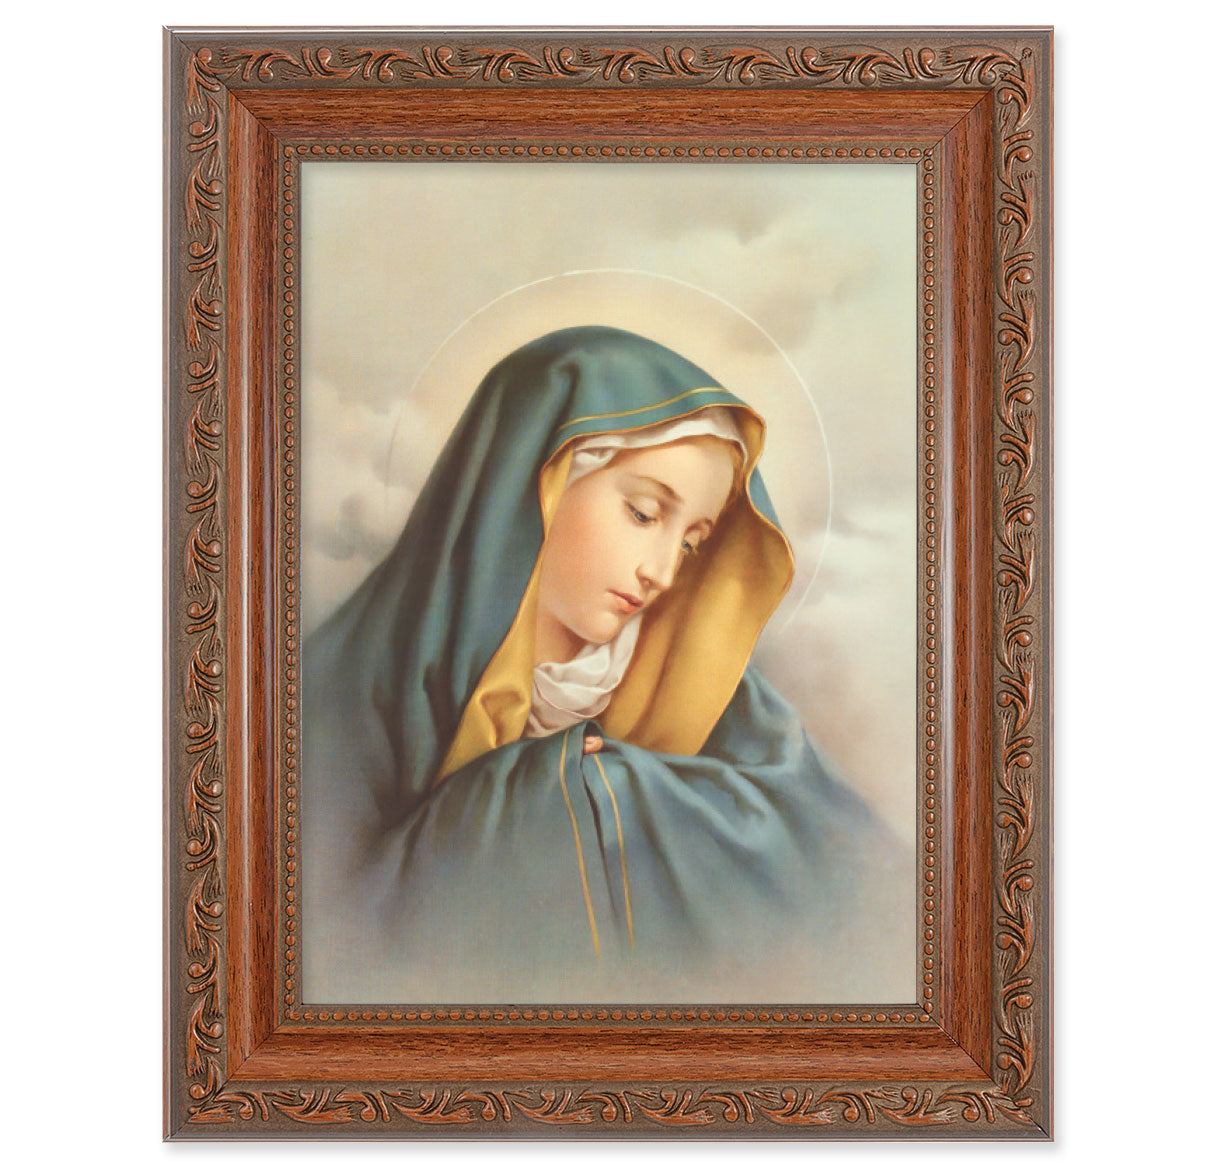 Our Lady of Sorrows Mahogany Finish Framed Art